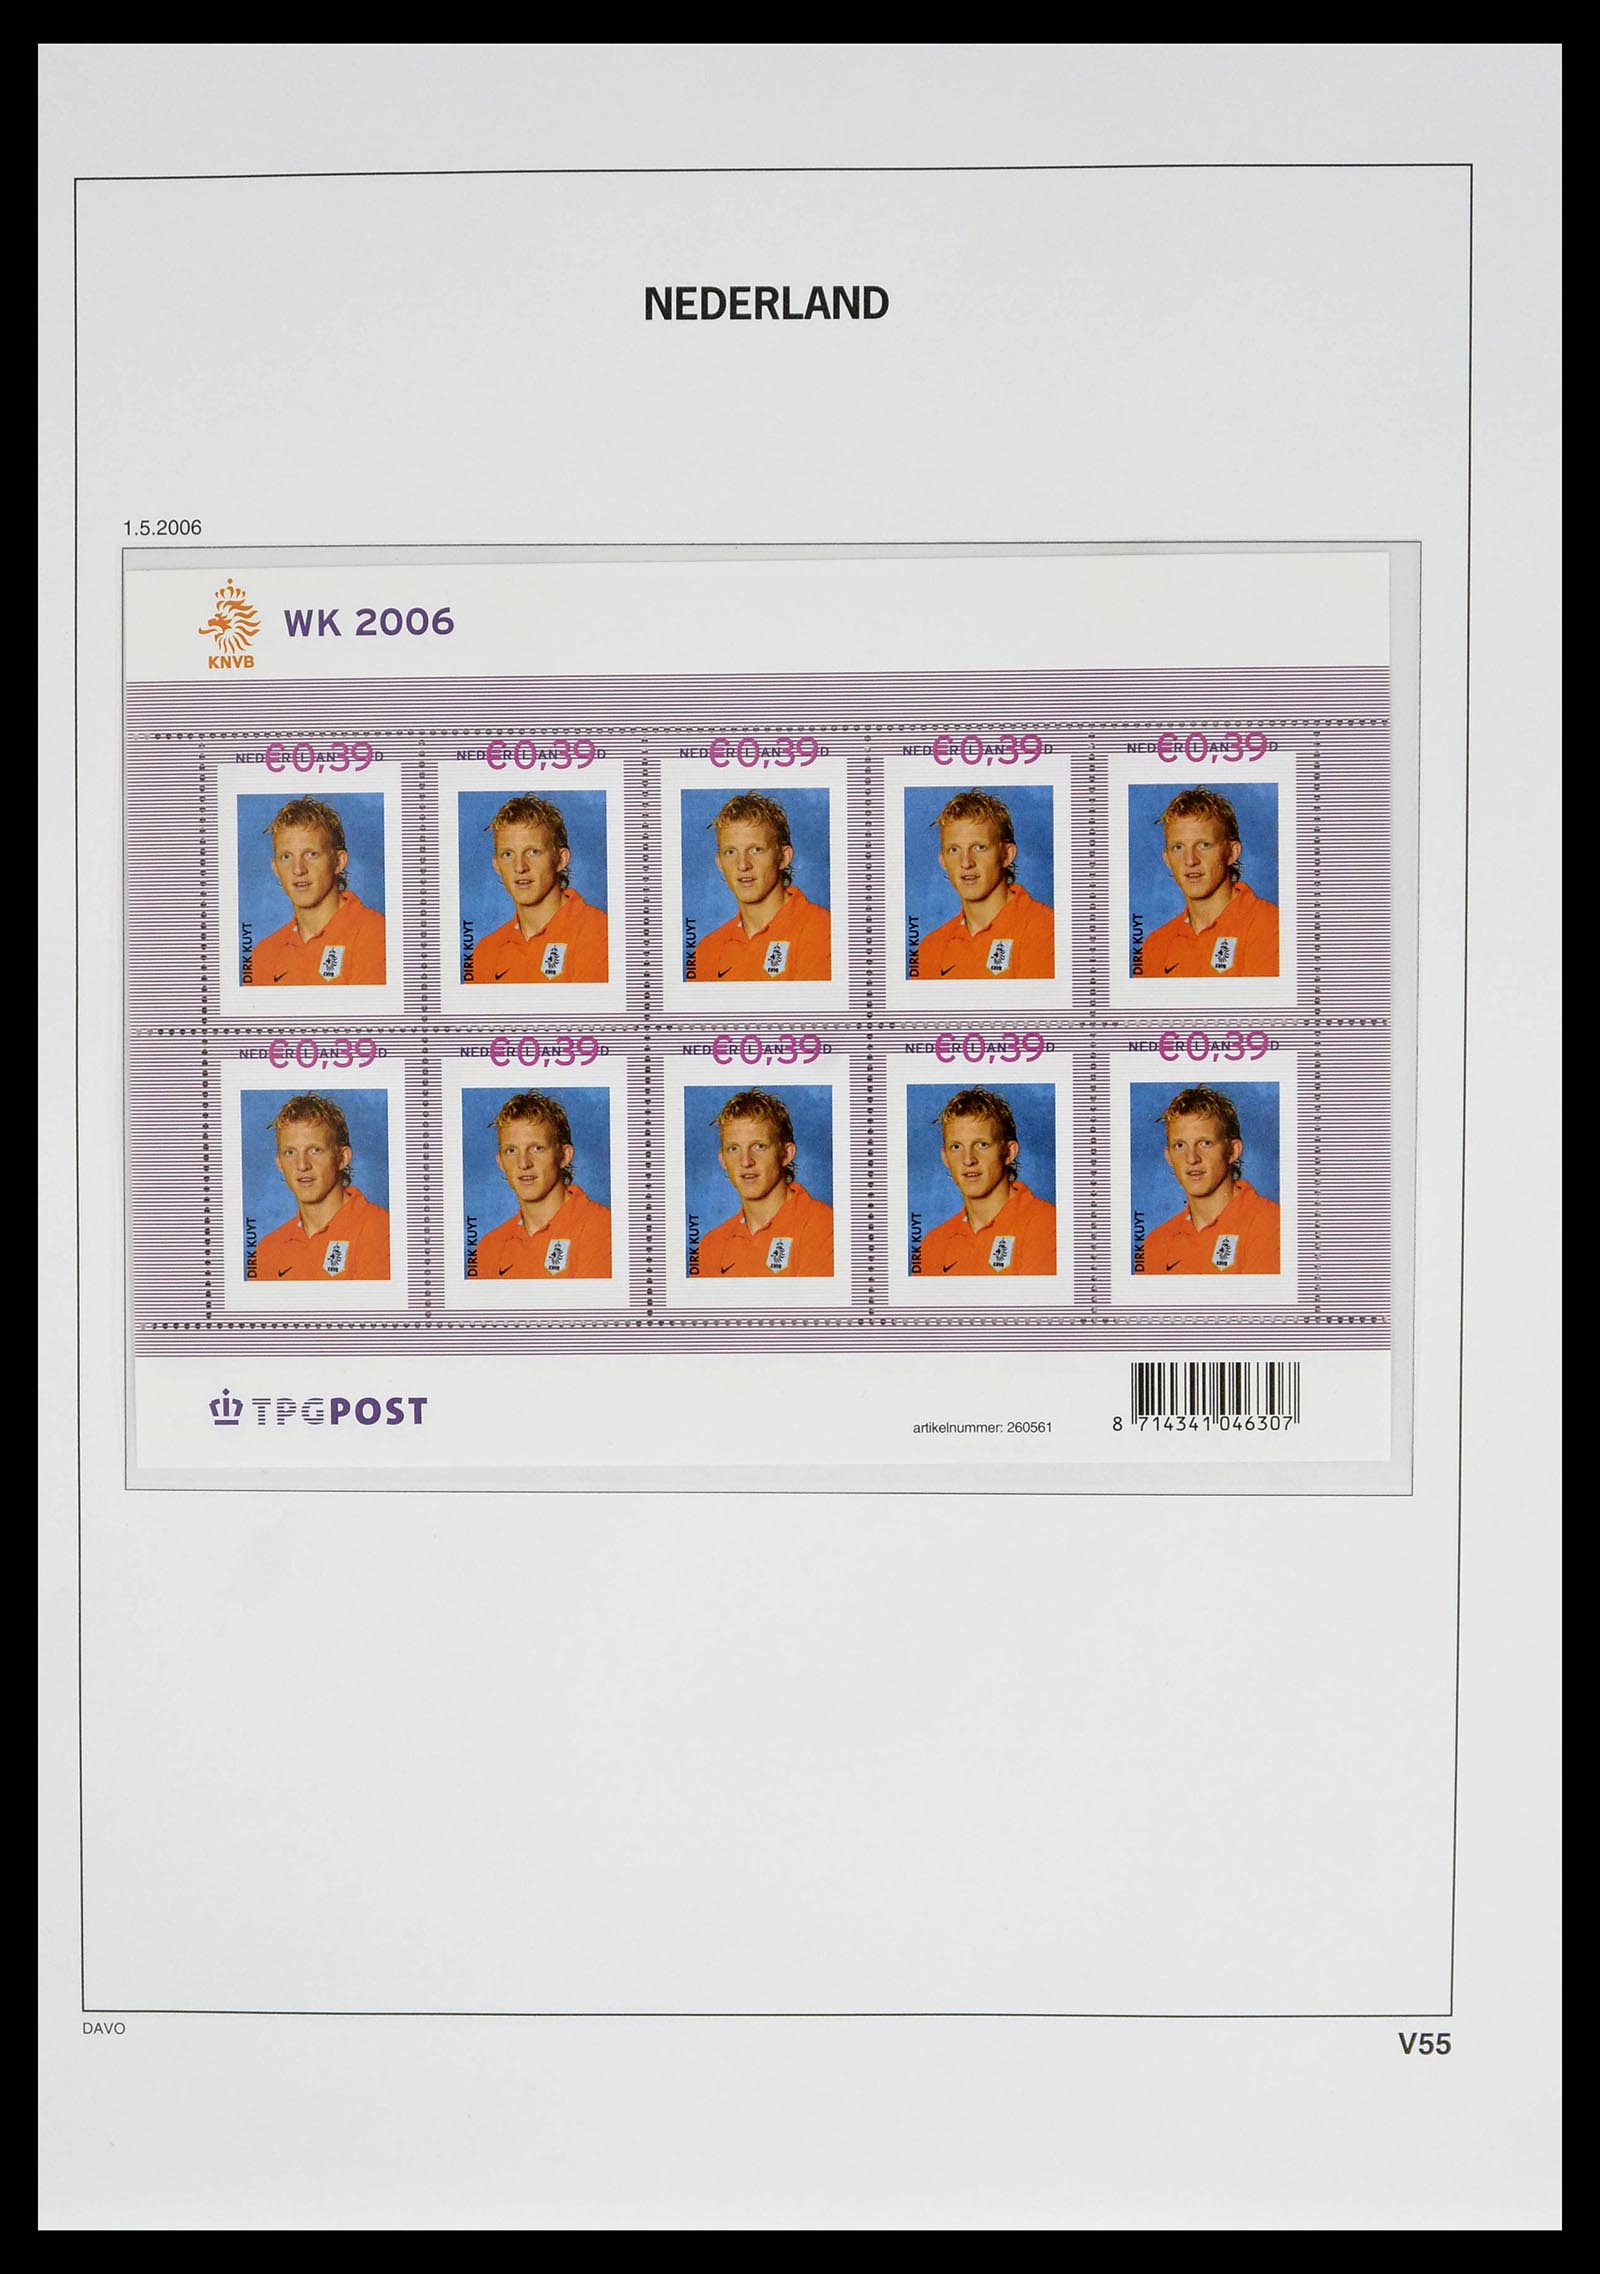 39134 0069 - Stamp collection 39134 Netherlands sheetlets 1992-2019!